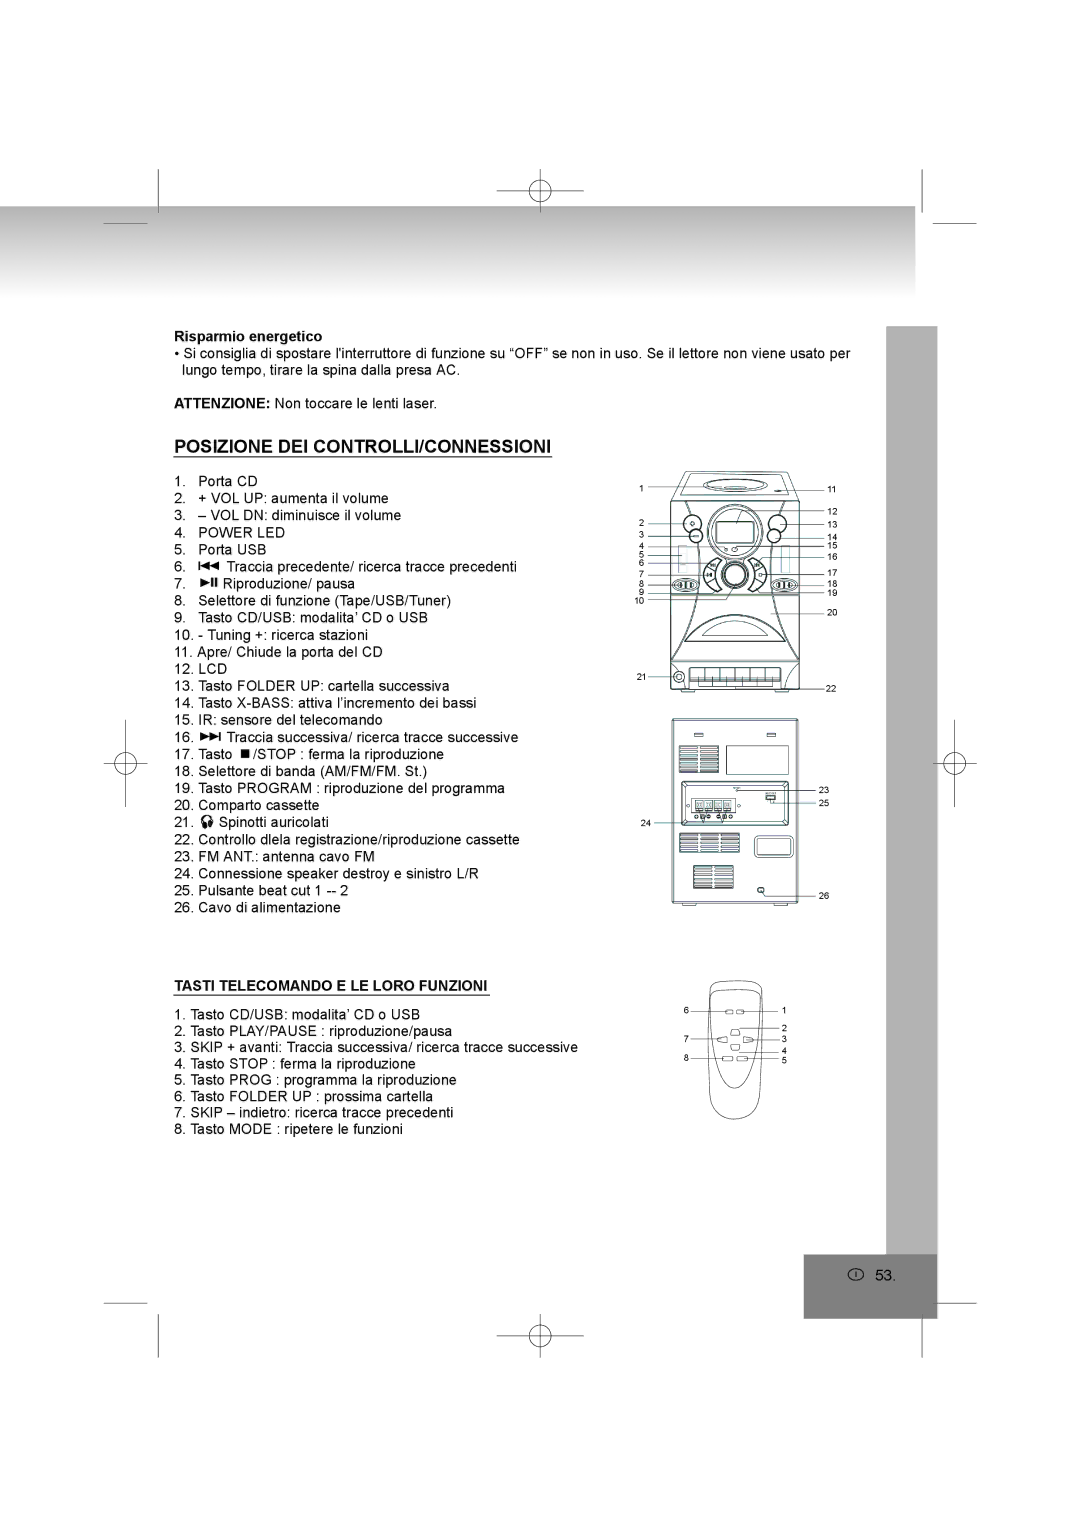 Elta 2322USB manual Posizione DEI CONTROLLI/CONNESSIONI, Risparmio energetico, Tasti Telecomando E LE Loro Funzioni 